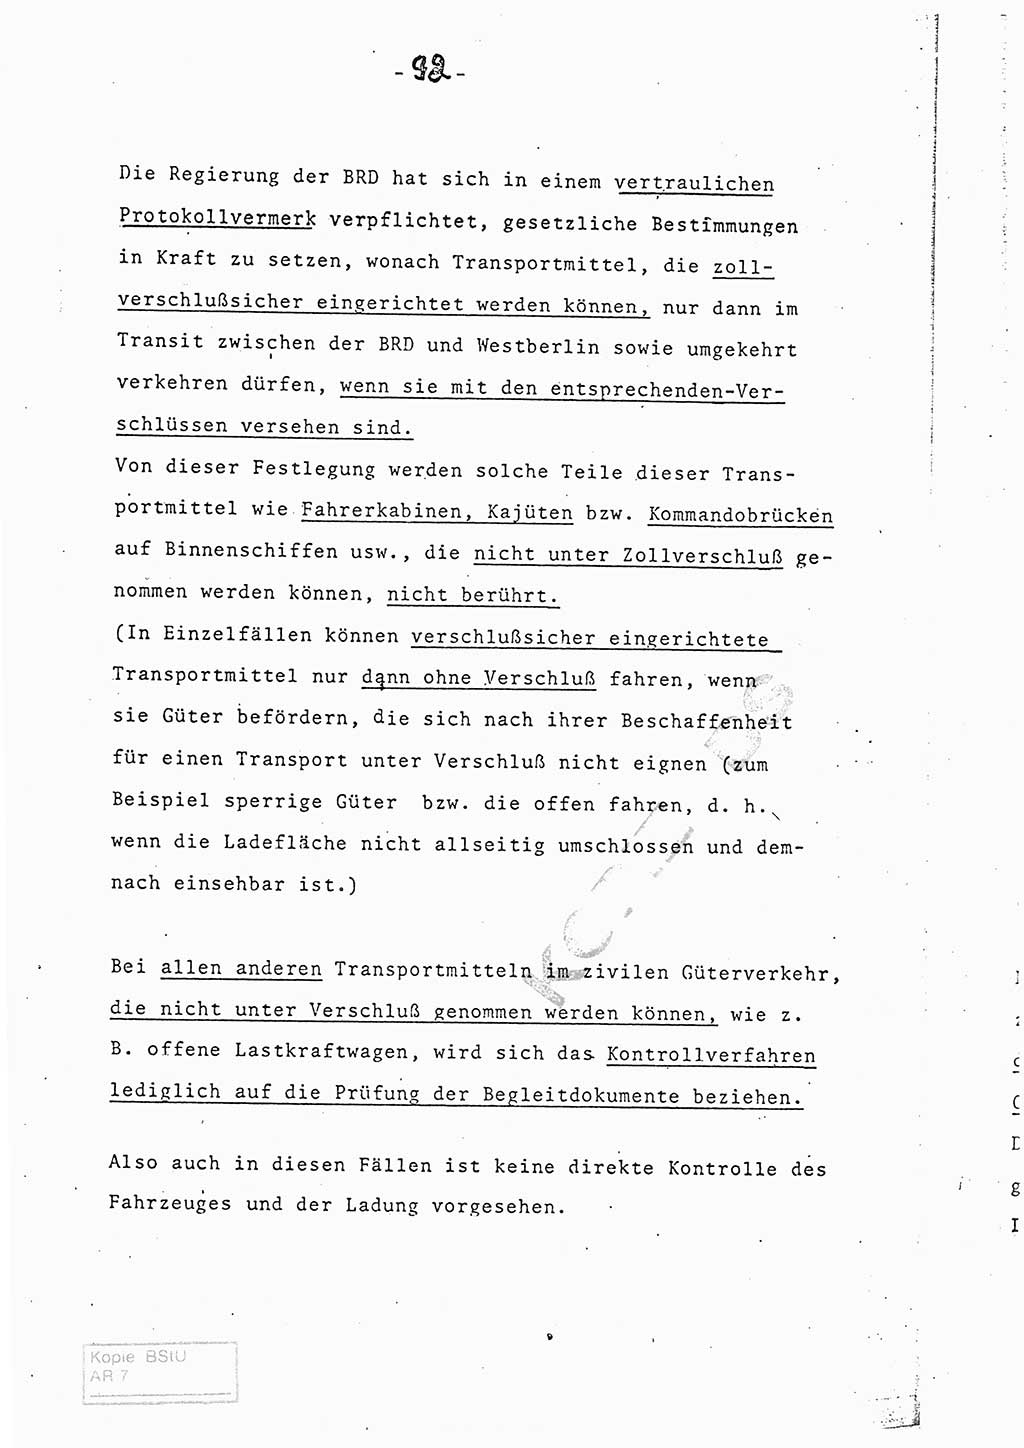 Referat (Entwurf) des Genossen Minister (Generaloberst Erich Mielke) auf der Dienstkonferenz 1972, Ministerium für Staatssicherheit (MfS) [Deutsche Demokratische Republik (DDR)], Der Minister, Geheime Verschlußsache (GVS) 008-150/72, Berlin 25.2.1972, Seite 92 (Ref. Entw. DK MfS DDR Min. GVS 008-150/72 1972, S. 92)